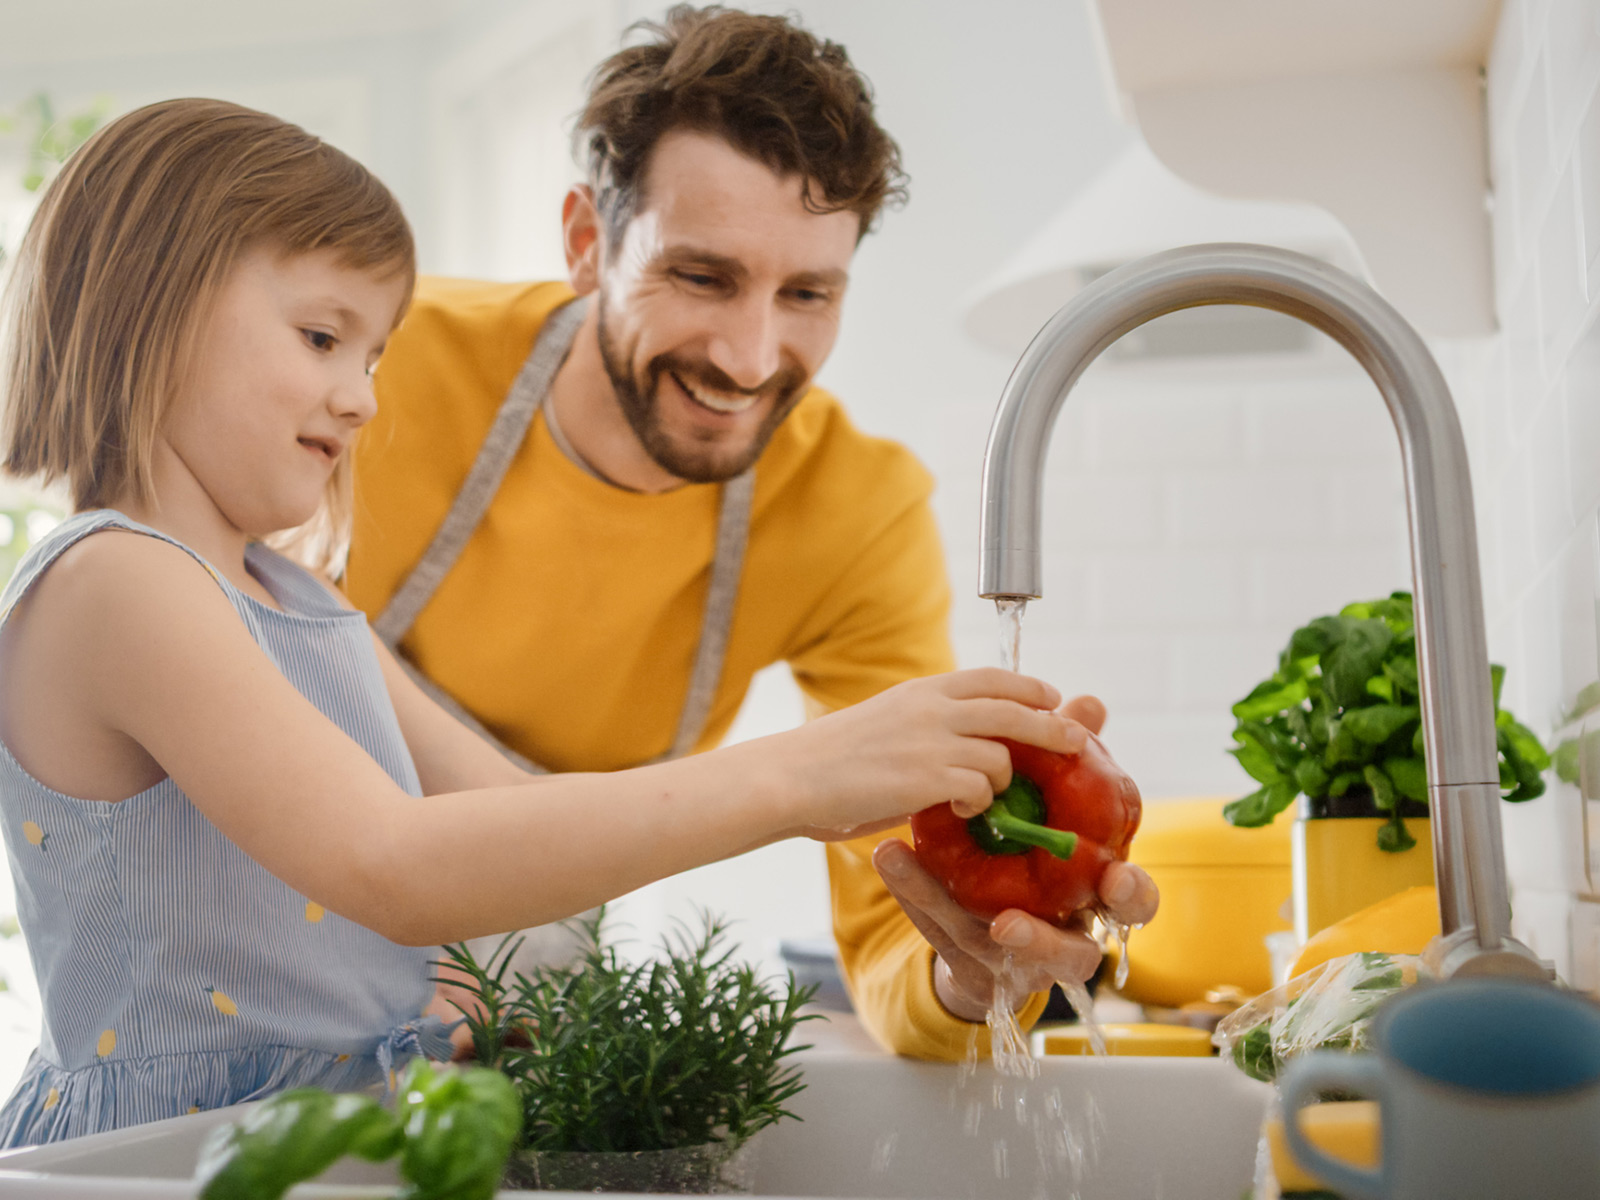 Un padre sonríe mientras ayuda a su hija menor a lavar vegetales en el fregadero